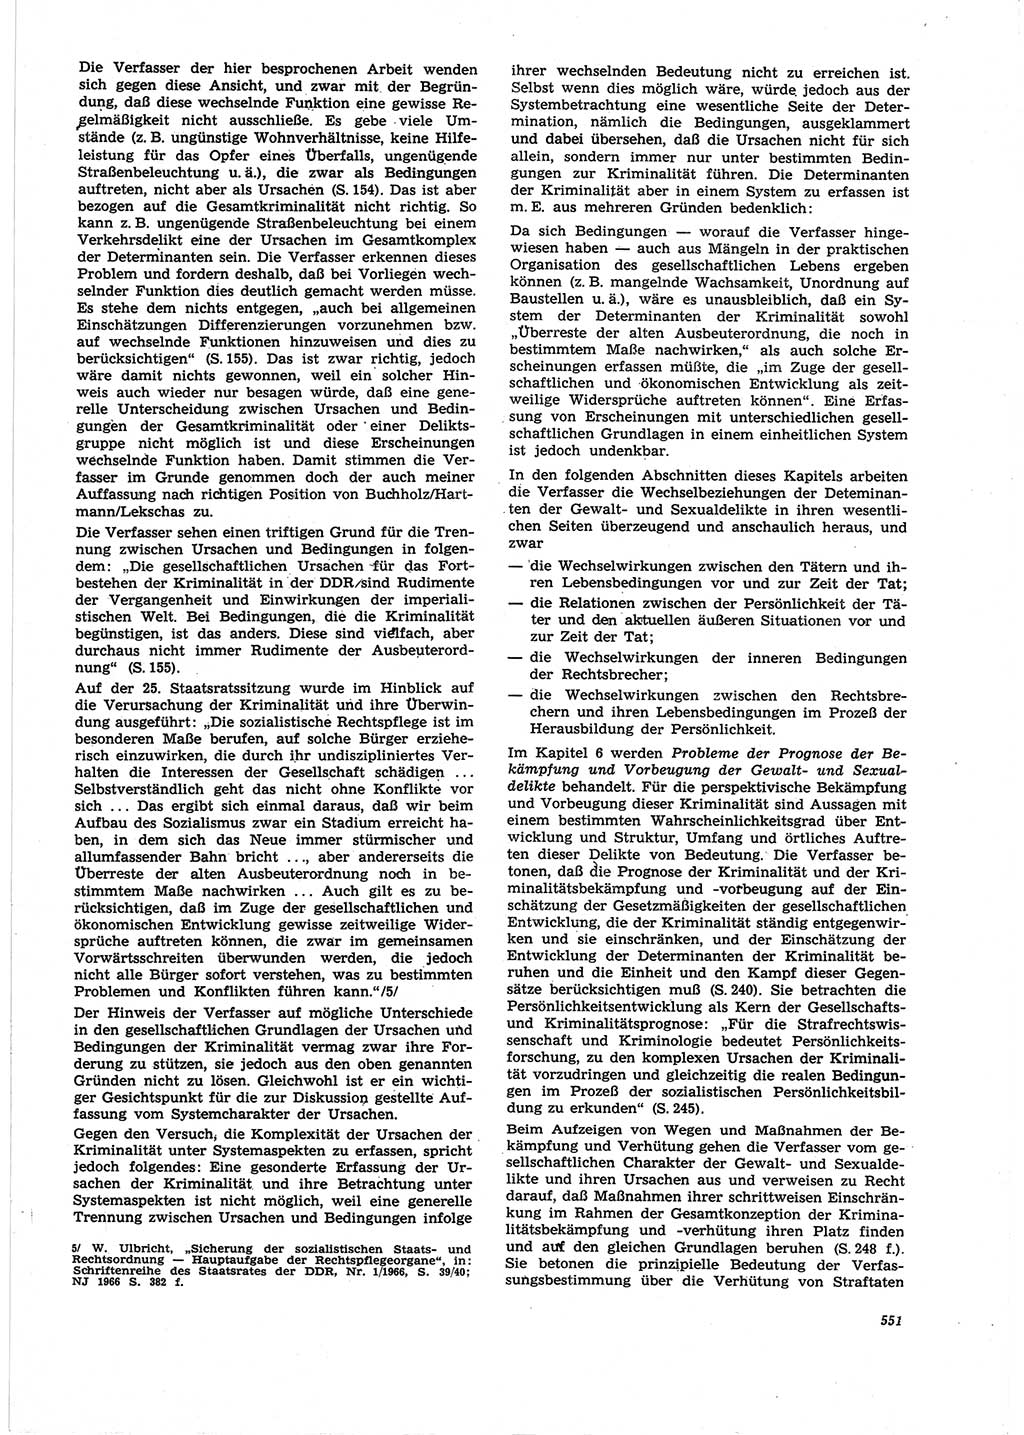 Neue Justiz (NJ), Zeitschrift für Recht und Rechtswissenschaft [Deutsche Demokratische Republik (DDR)], 25. Jahrgang 1971, Seite 551 (NJ DDR 1971, S. 551)